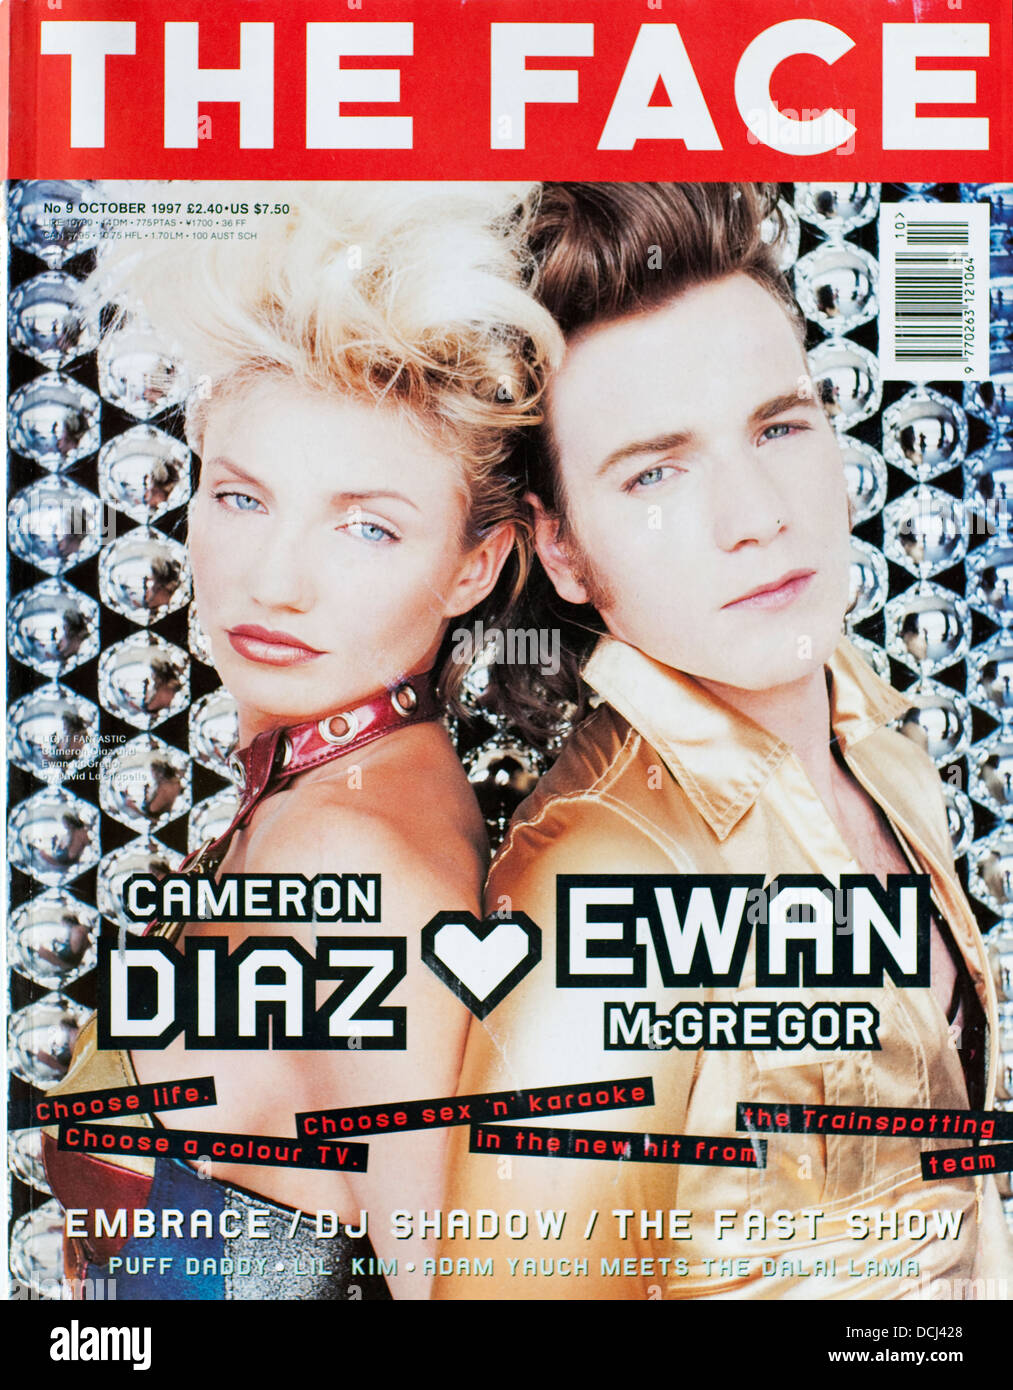 The face Magazine - octobre 1997, Cameron Diaz & Ewan McGregor - usage éditorial uniquement Banque D'Images